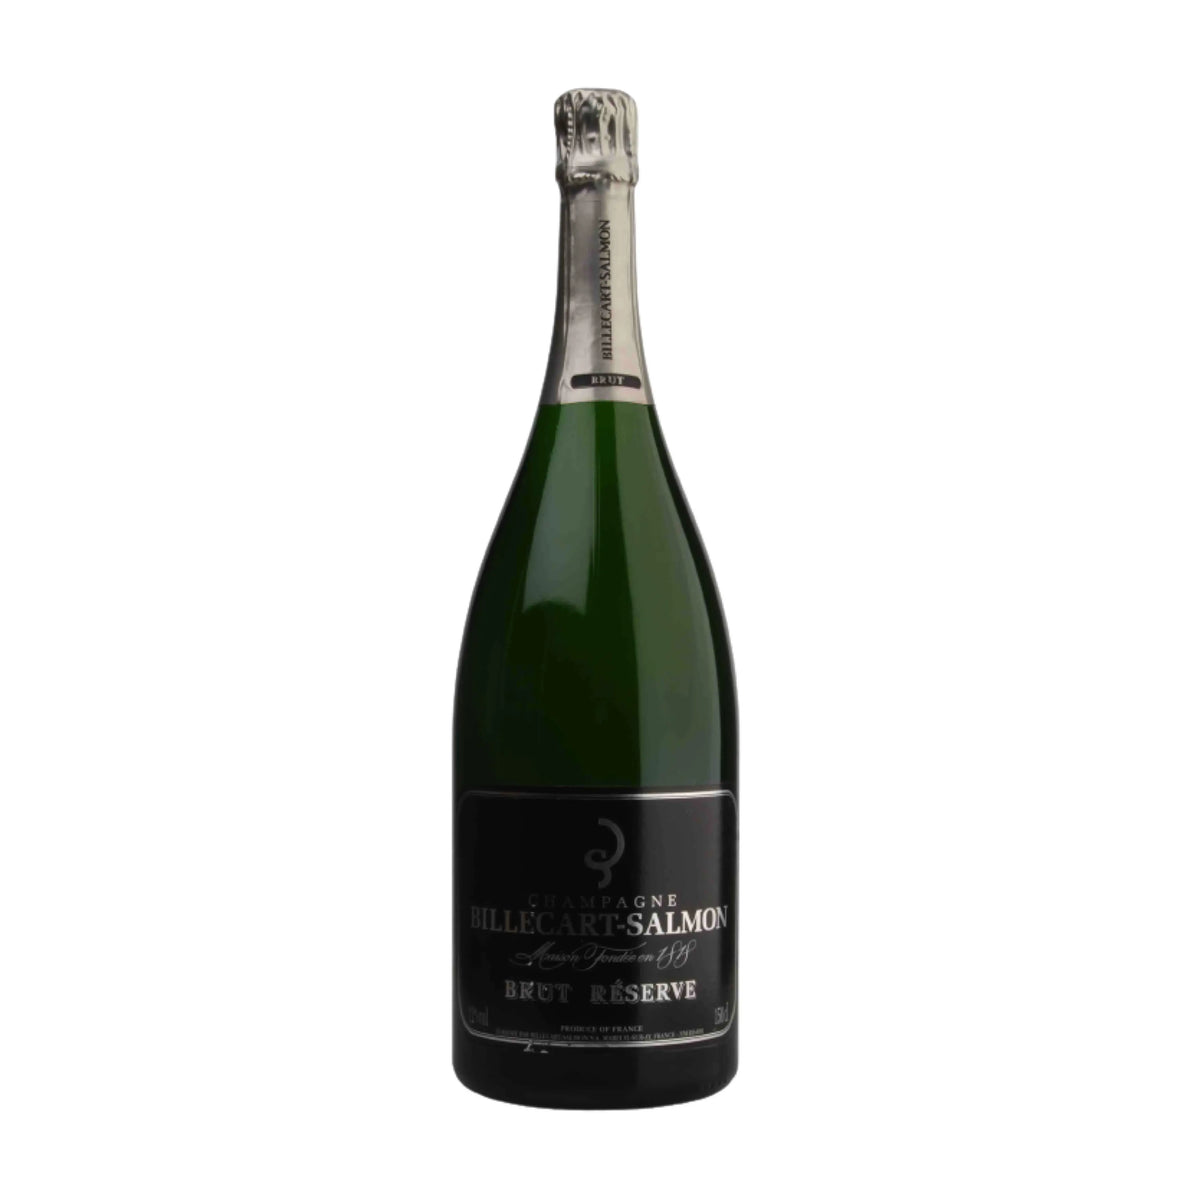 Billecart-Salmon-Schaumwein-Pinot Noir, Pinot Meunier, Chardonnay-Brut Reserve Champagne AOC DMG 3.0l-WINECOM